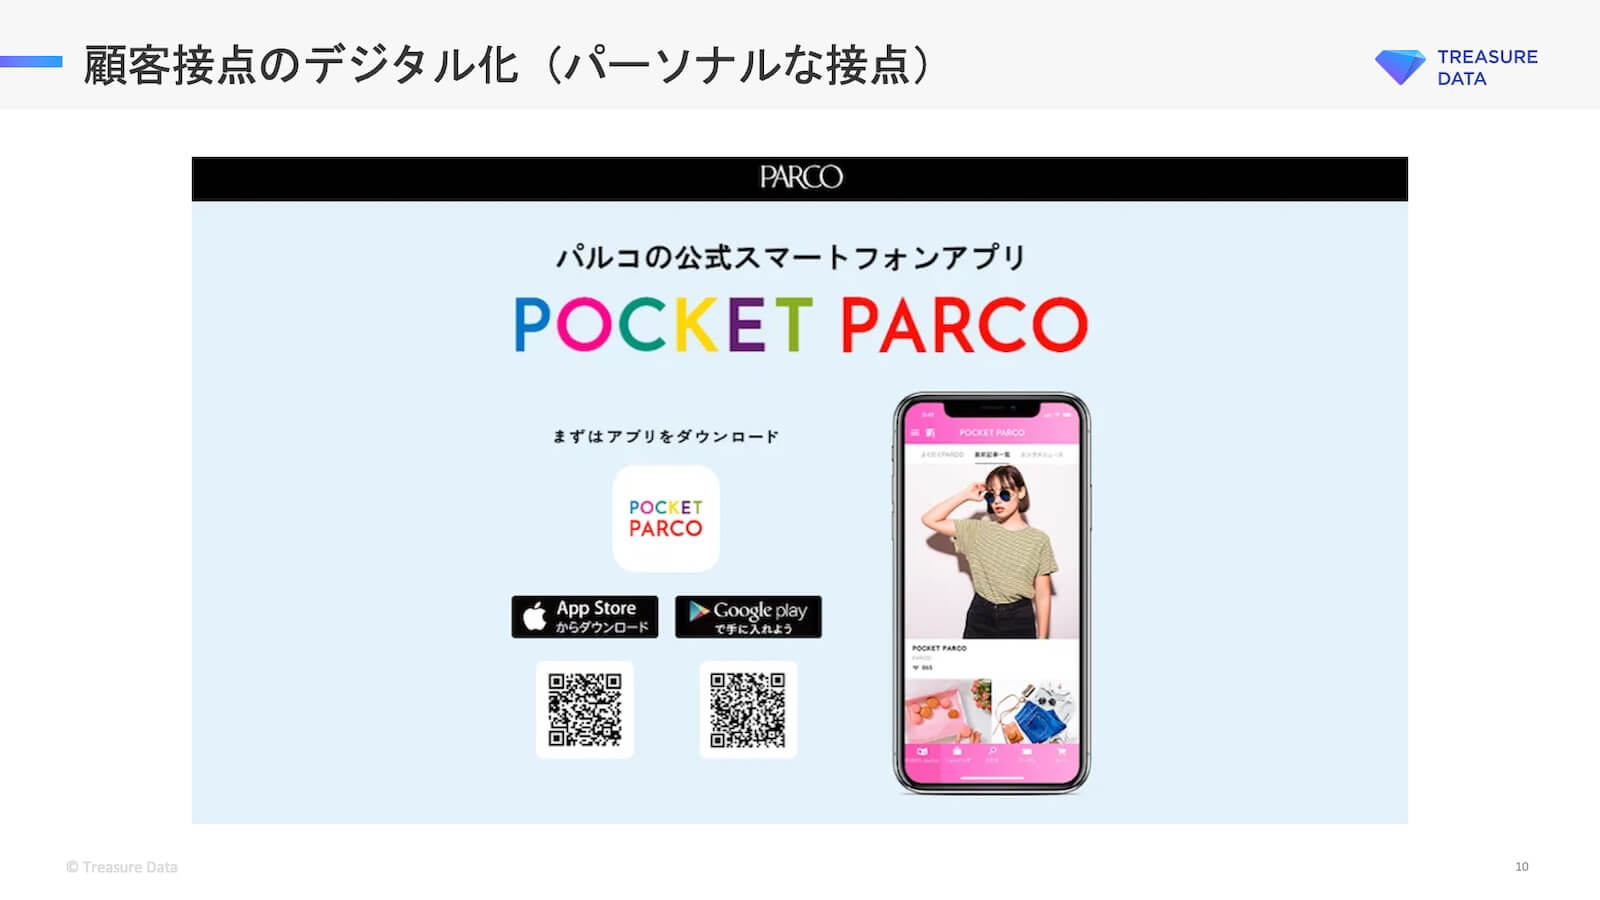 パルコの公式スマートフォンアプリ POCKET PARCO